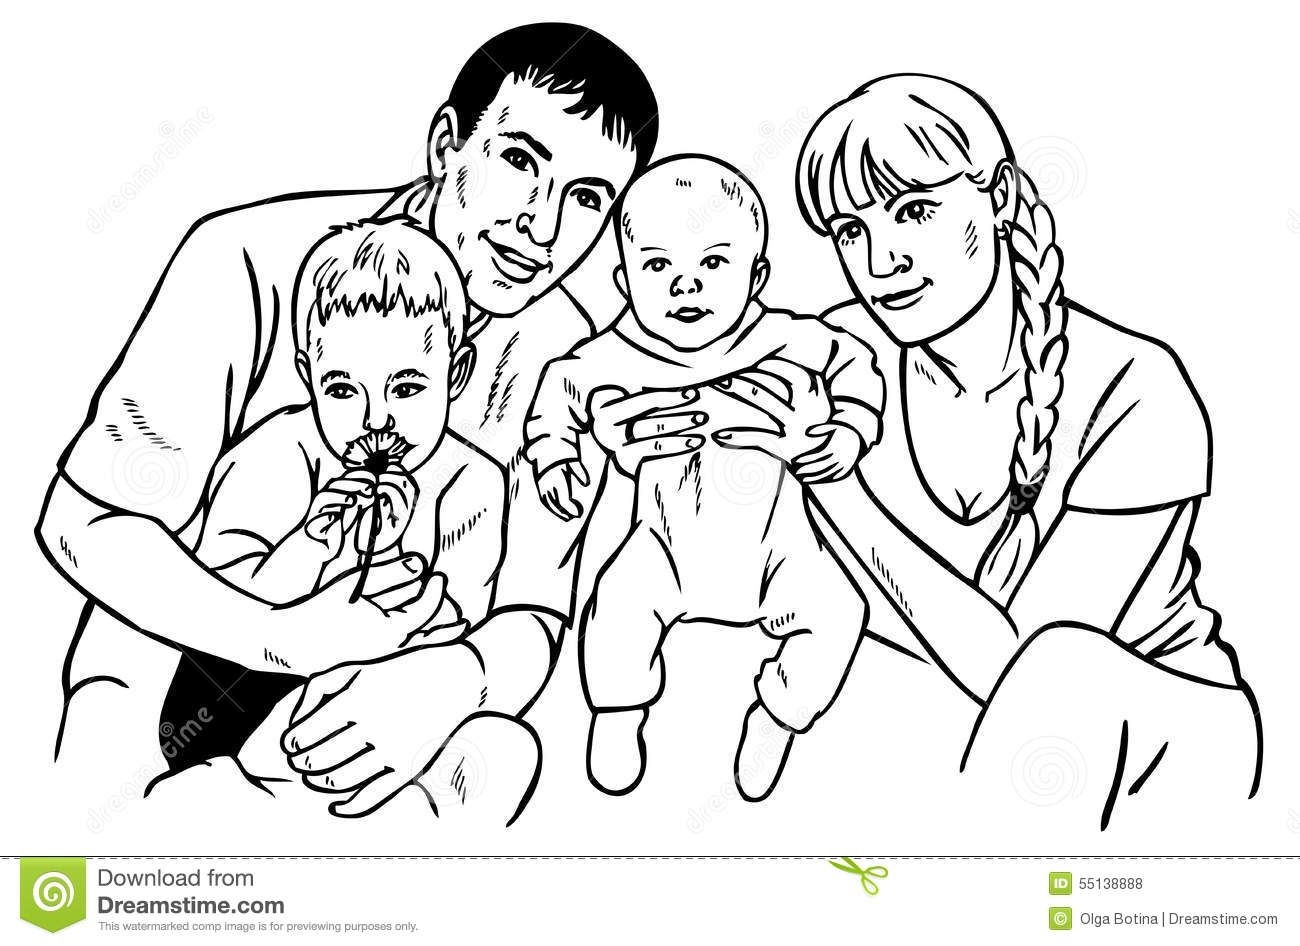 Нарисовать семейный портрет из 3 человек